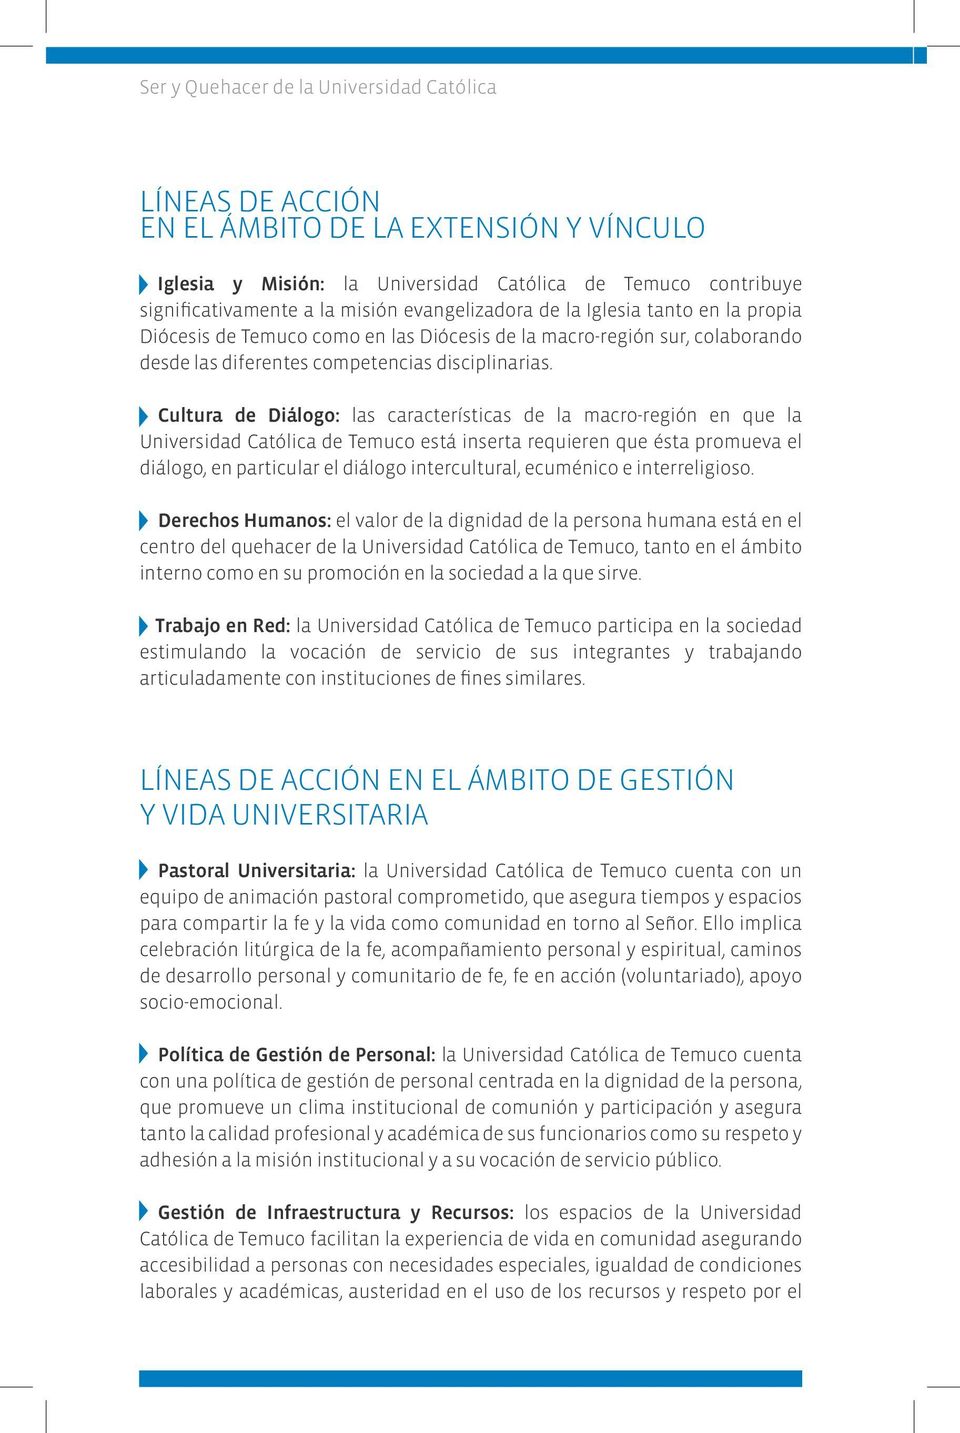 Cultura de Diálogo: las características de la macro-región en que la Universidad Católica de Temuco está inserta requieren que ésta promueva el diálogo, en particular el diálogo intercultural,